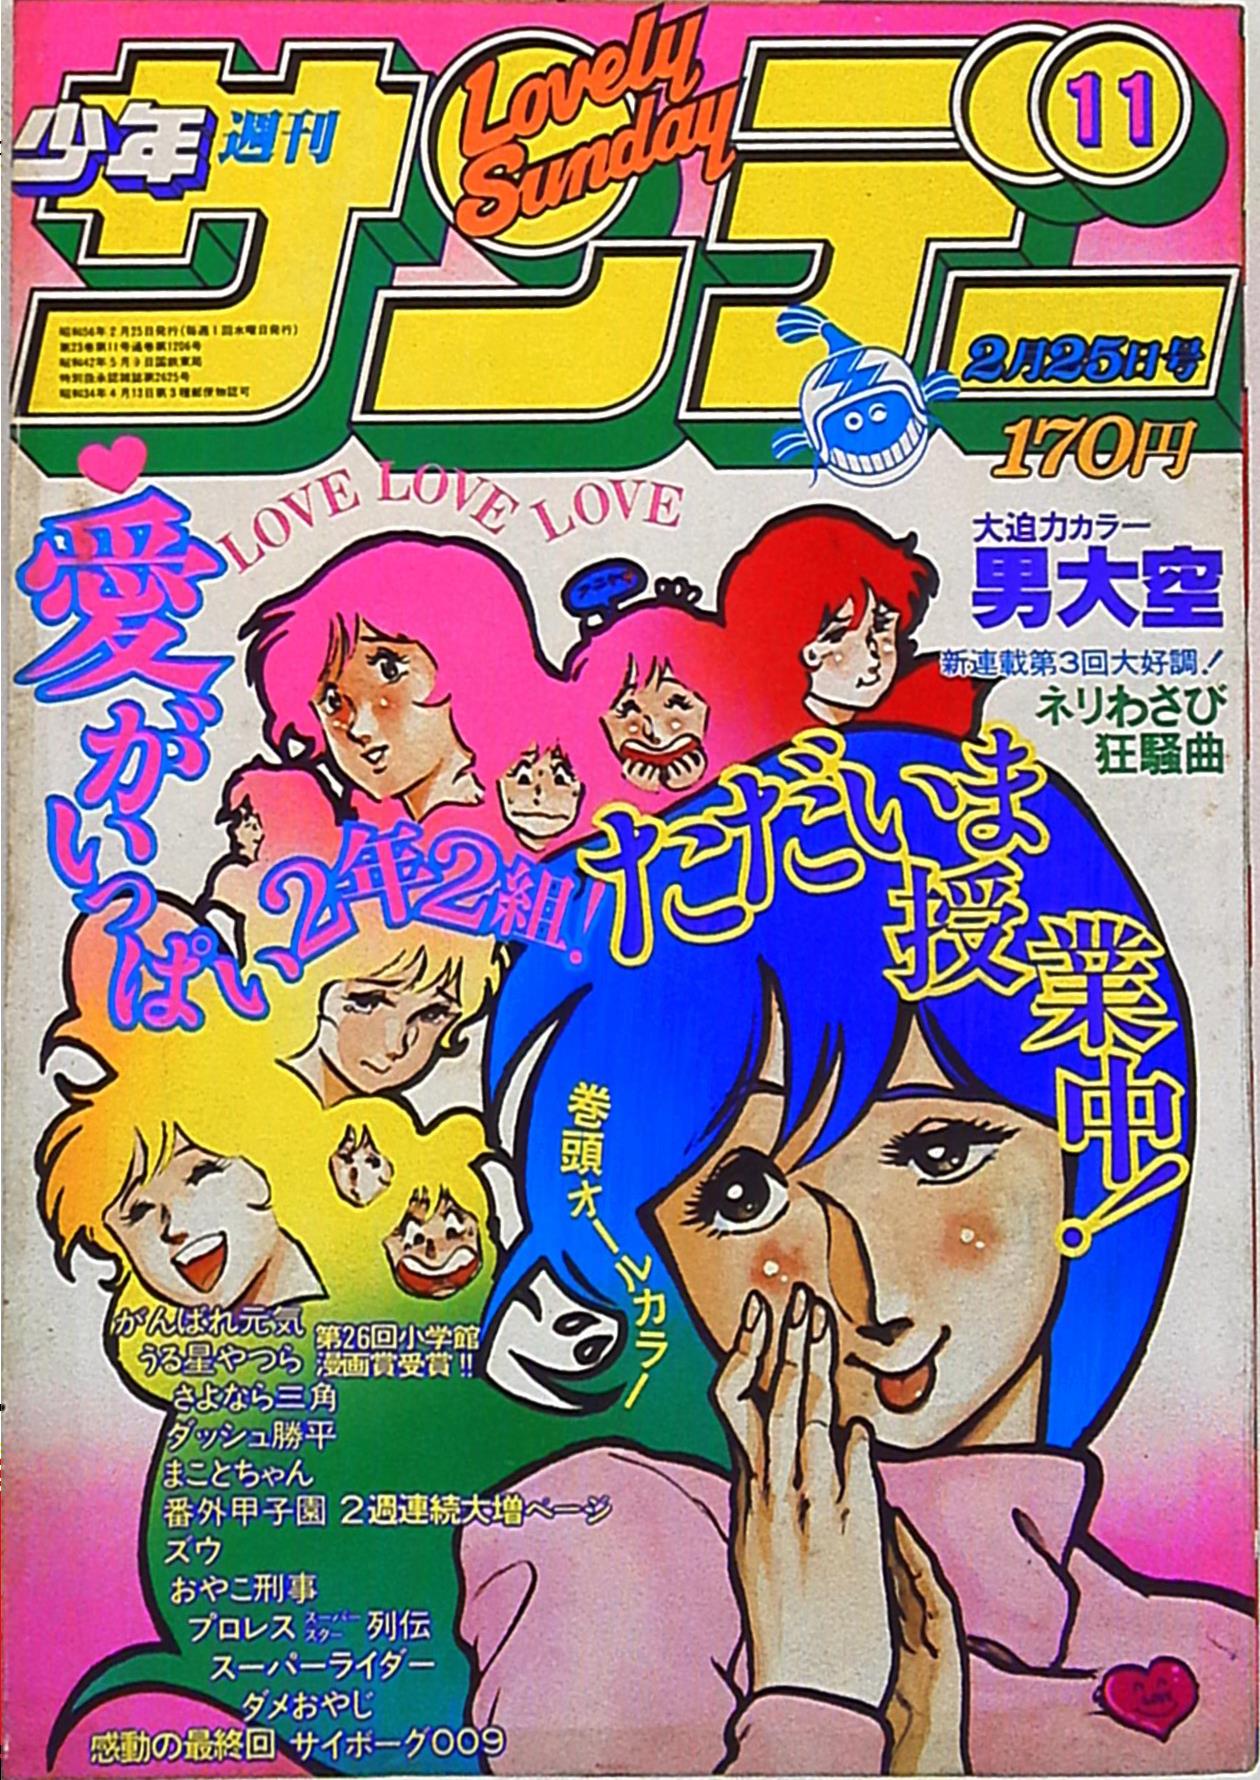 小学館 1981年(昭和56年)の漫画雑誌 『週刊少年サンデー1981年(昭和56 